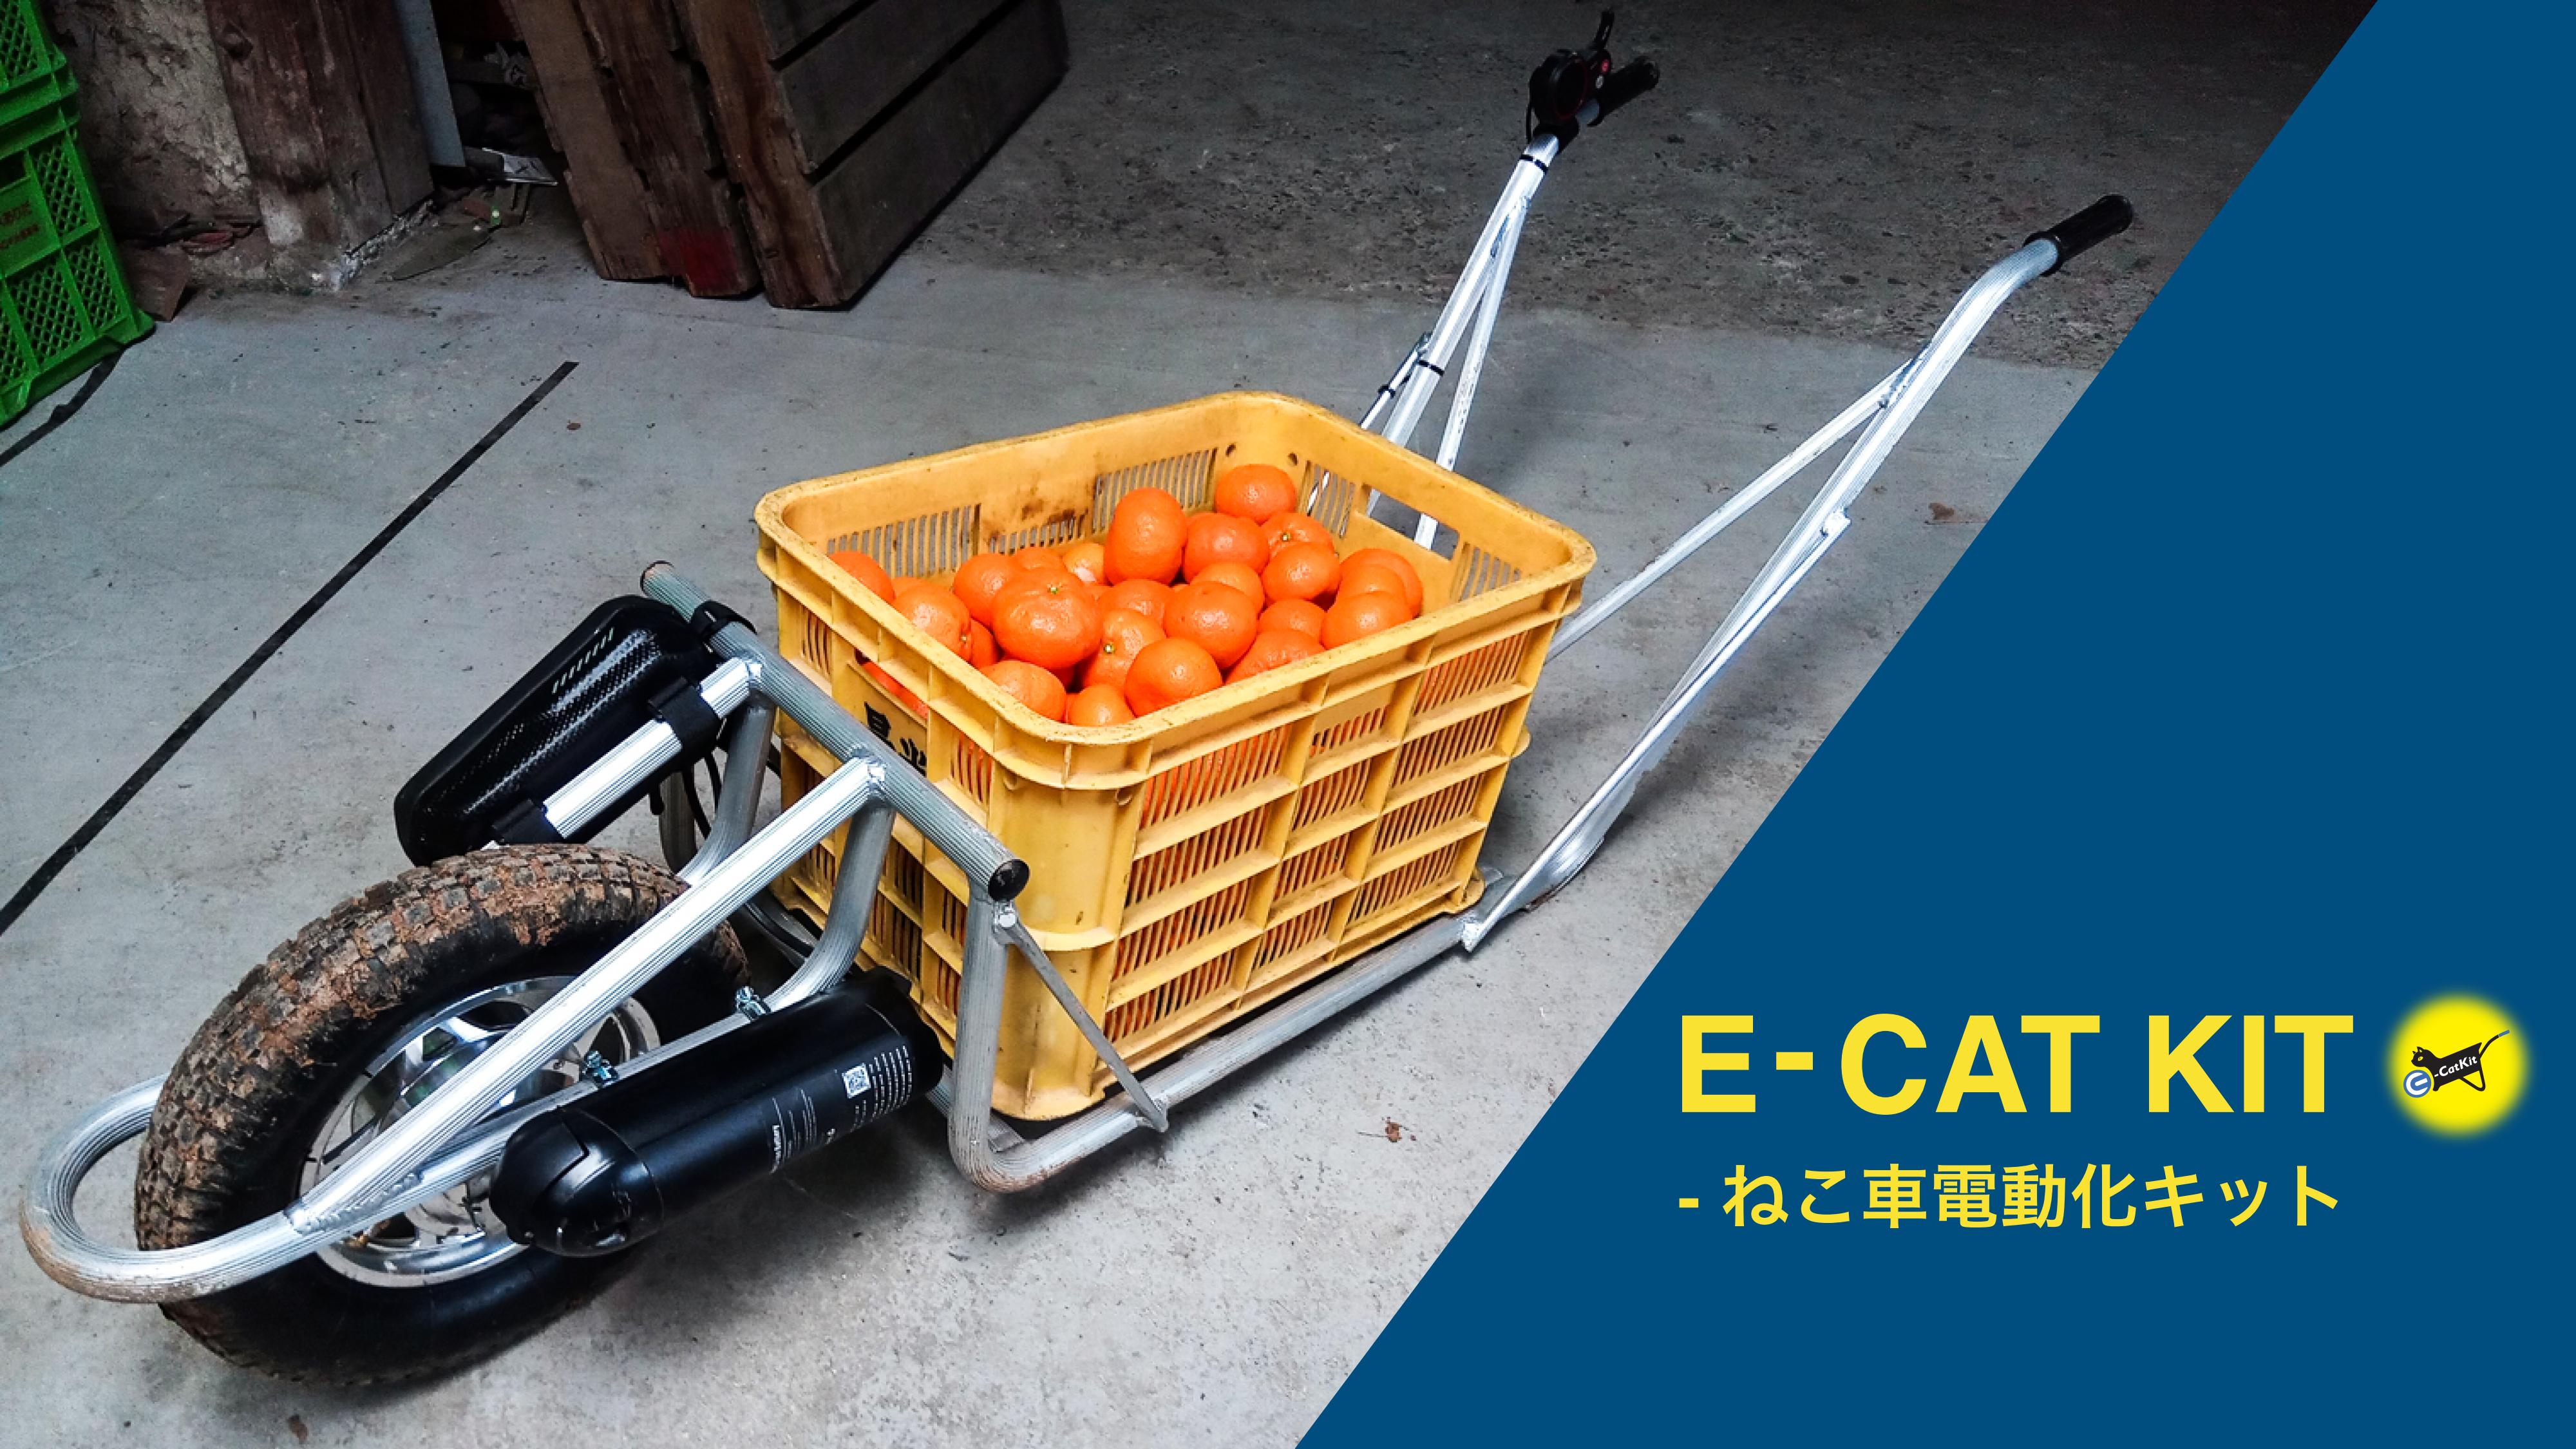 日本初 Jaと直接取引したハードウェアベンチャー ねこ車電動化キット E Cat Kit の和歌山県先行販売分100台が4ヶ月で完売 全国展開に向けて 第4回関西農業week21 に出展します 株式会社cuborexのプレスリリース